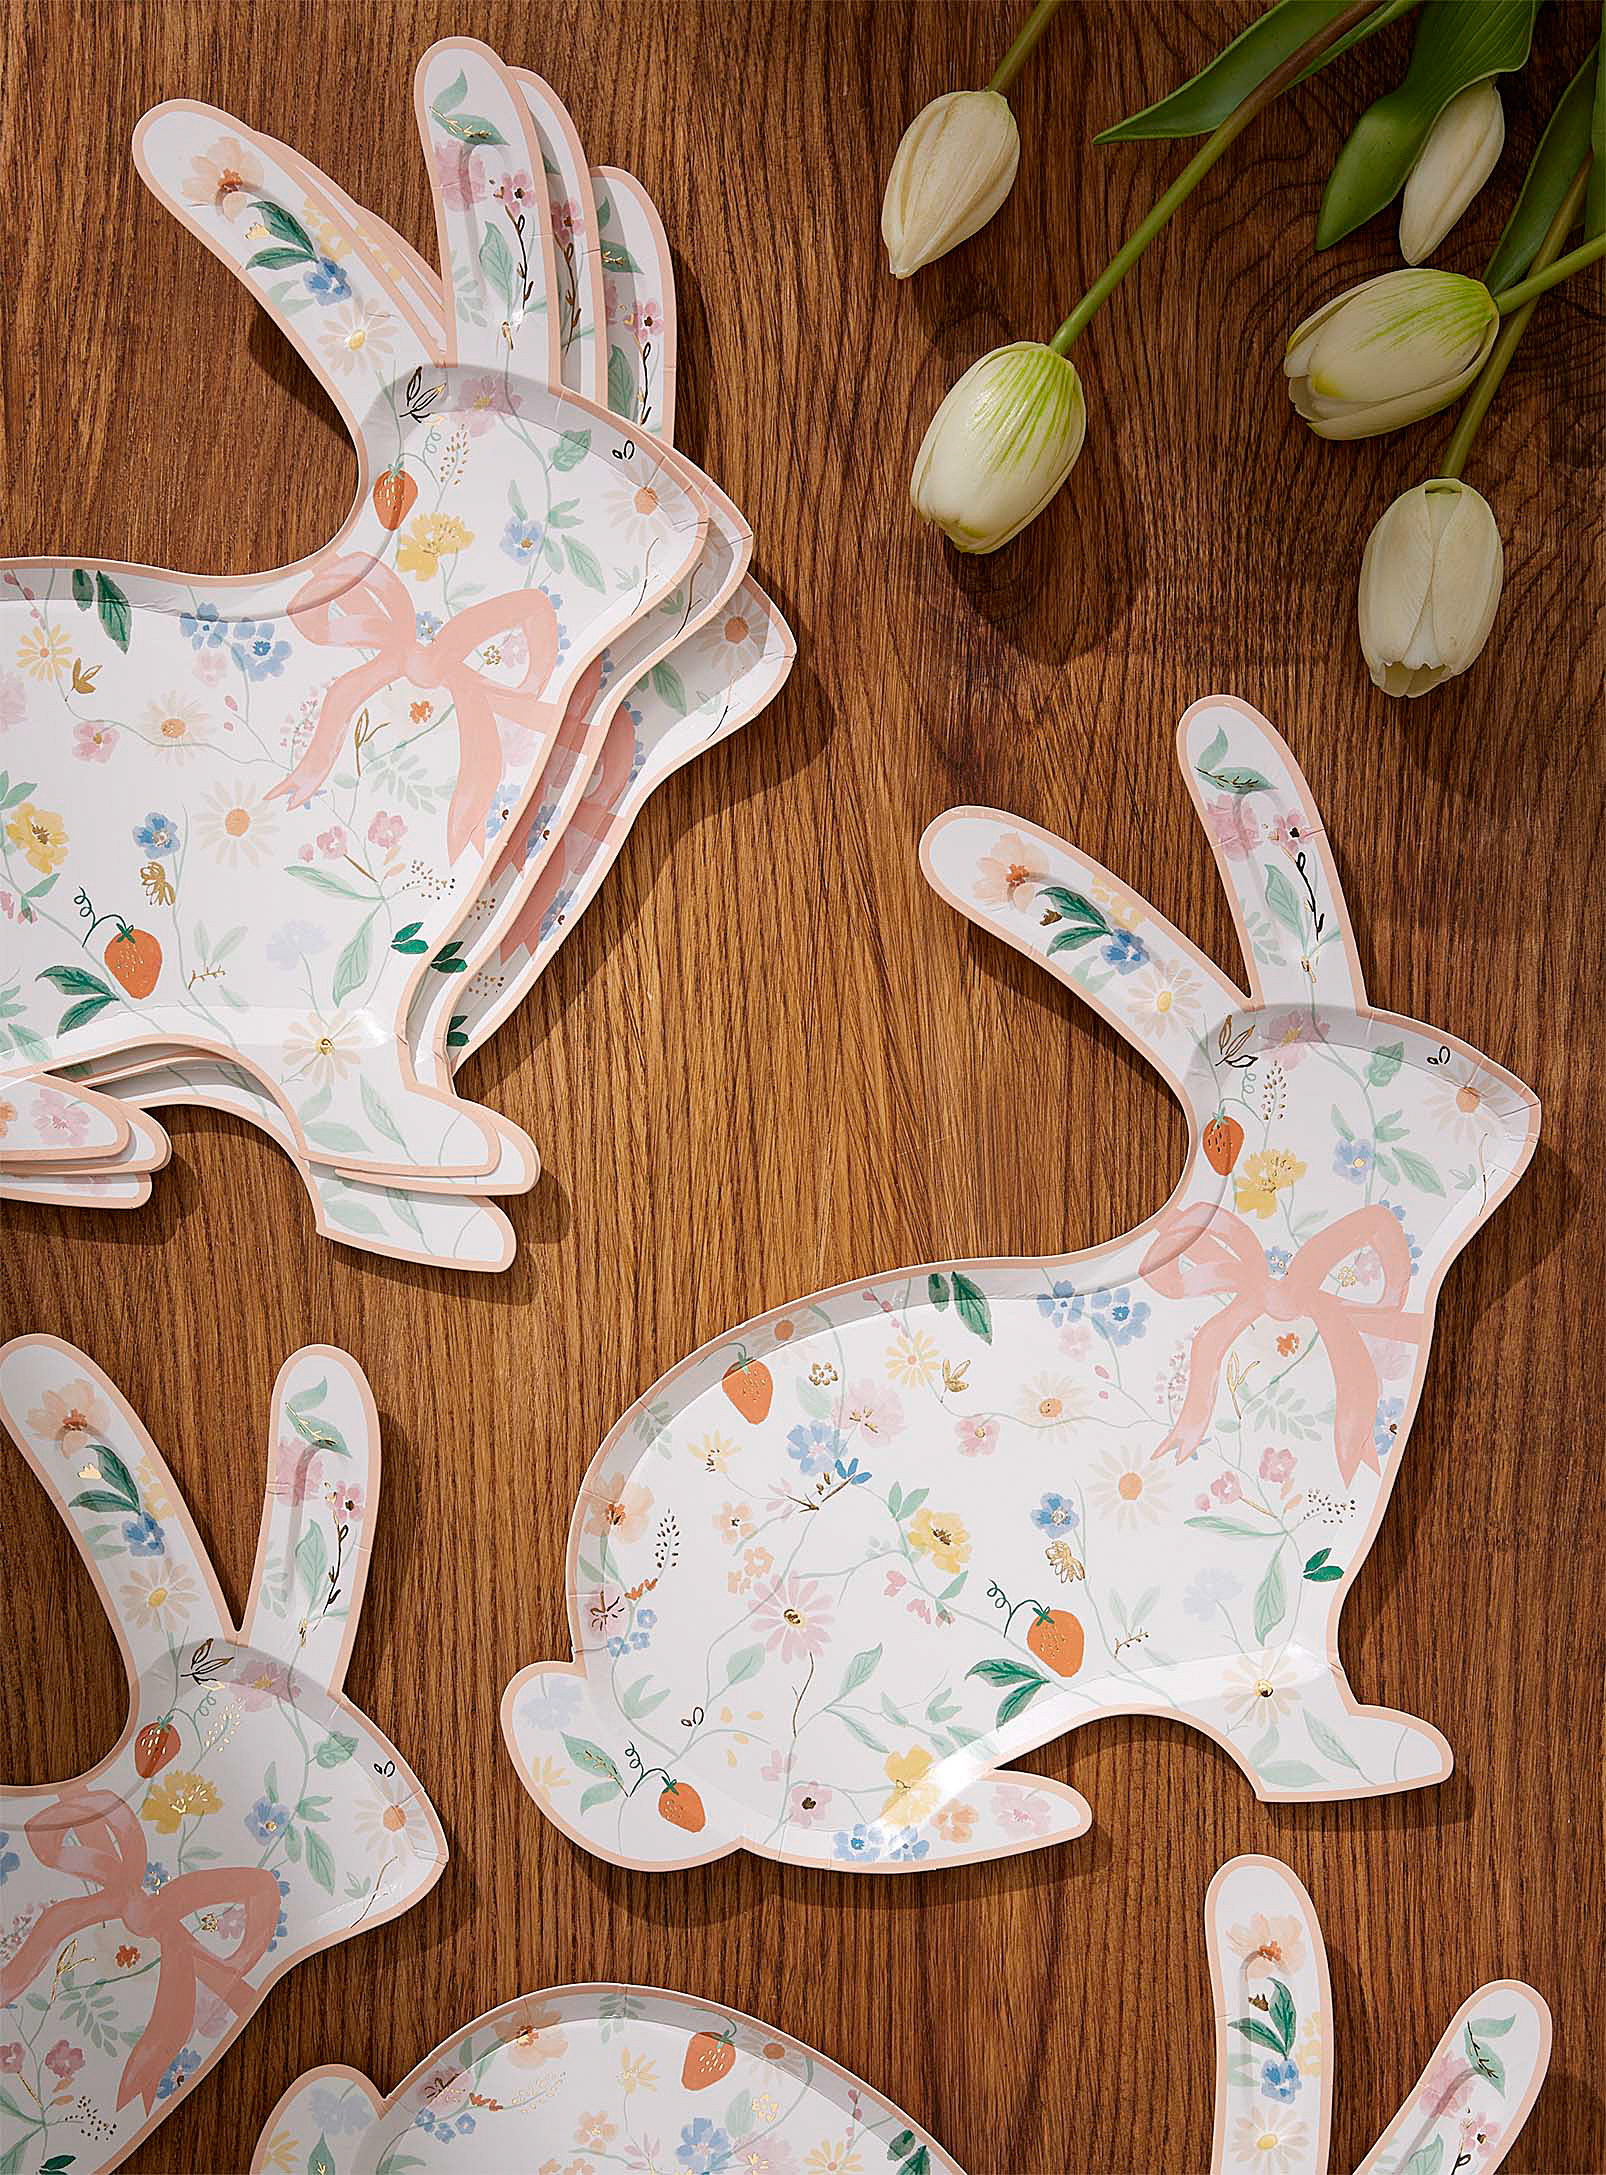 Meri Meri Spring Rabbit Paper Plates Set Of 8 In Assorted